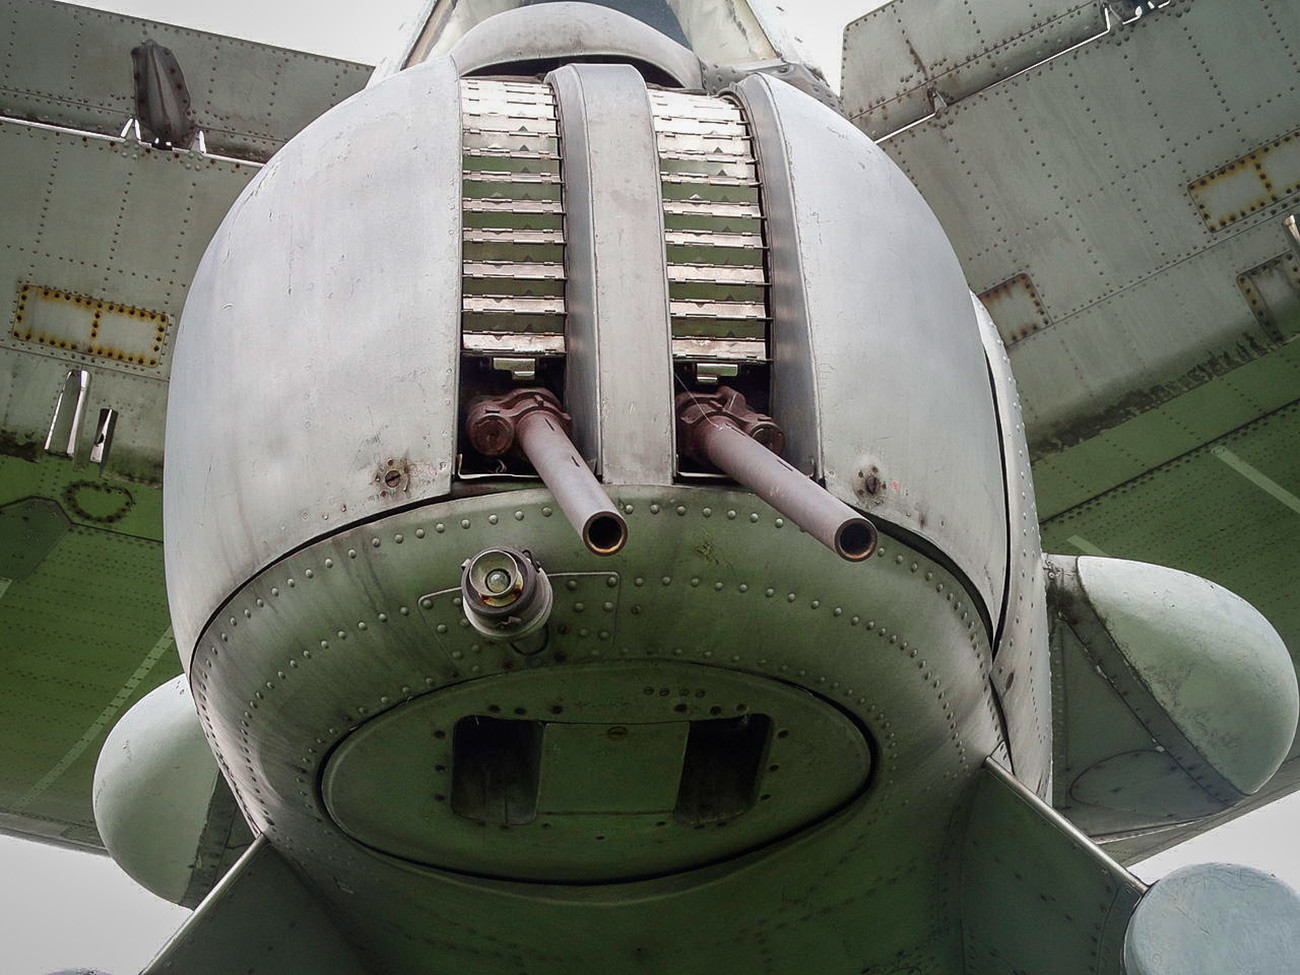 Tu-142の尾部に取り付けられたAM-23